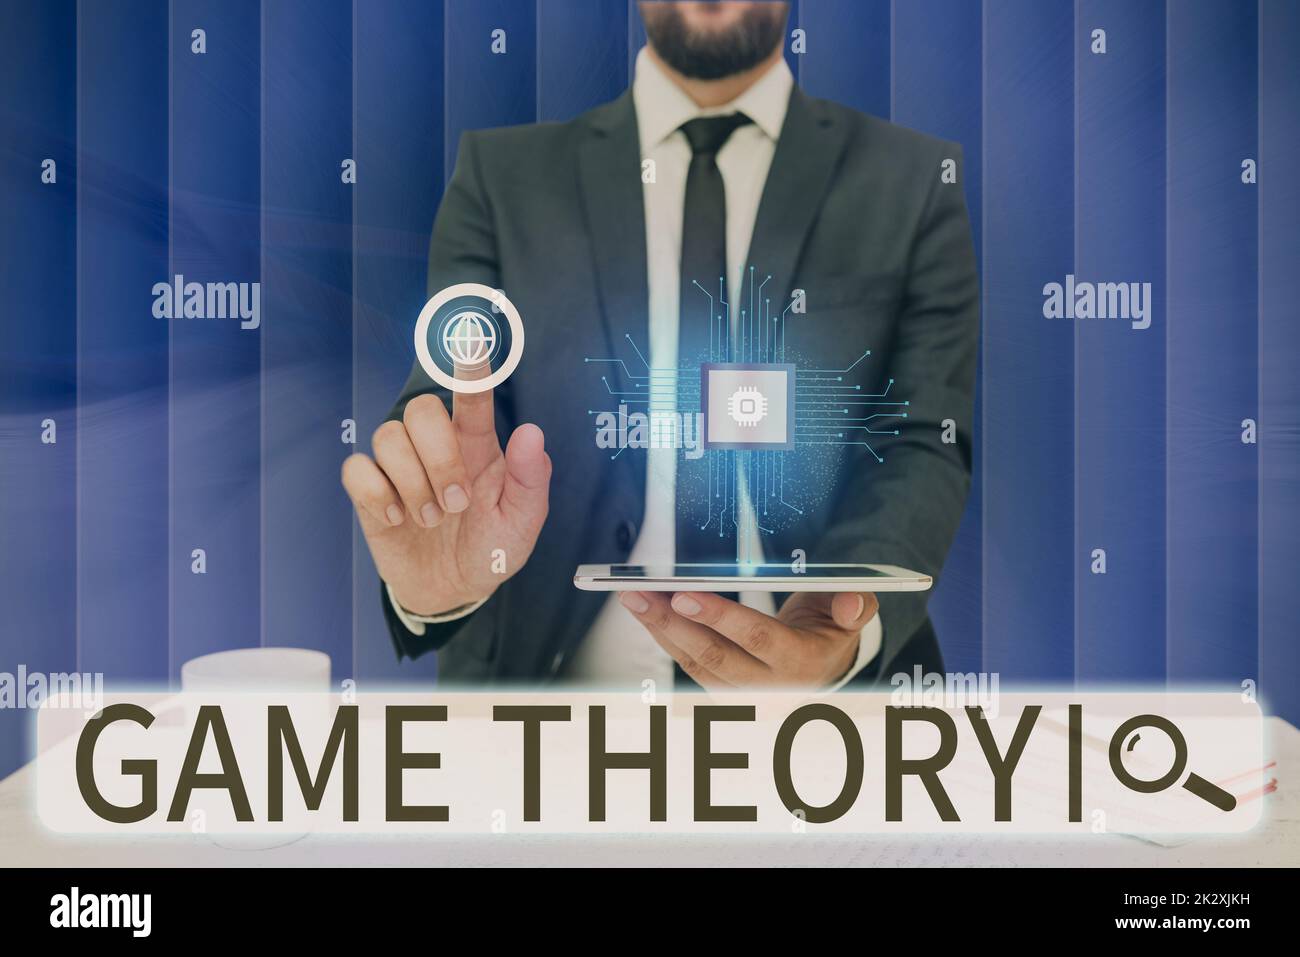 Segno che mostra la teoria del gioco. Business concept ramo di matematica si occupa di analisi di strategie uomo tenendo schermo di telefono cellulare mostrando la tecnologia futuristica. Foto Stock